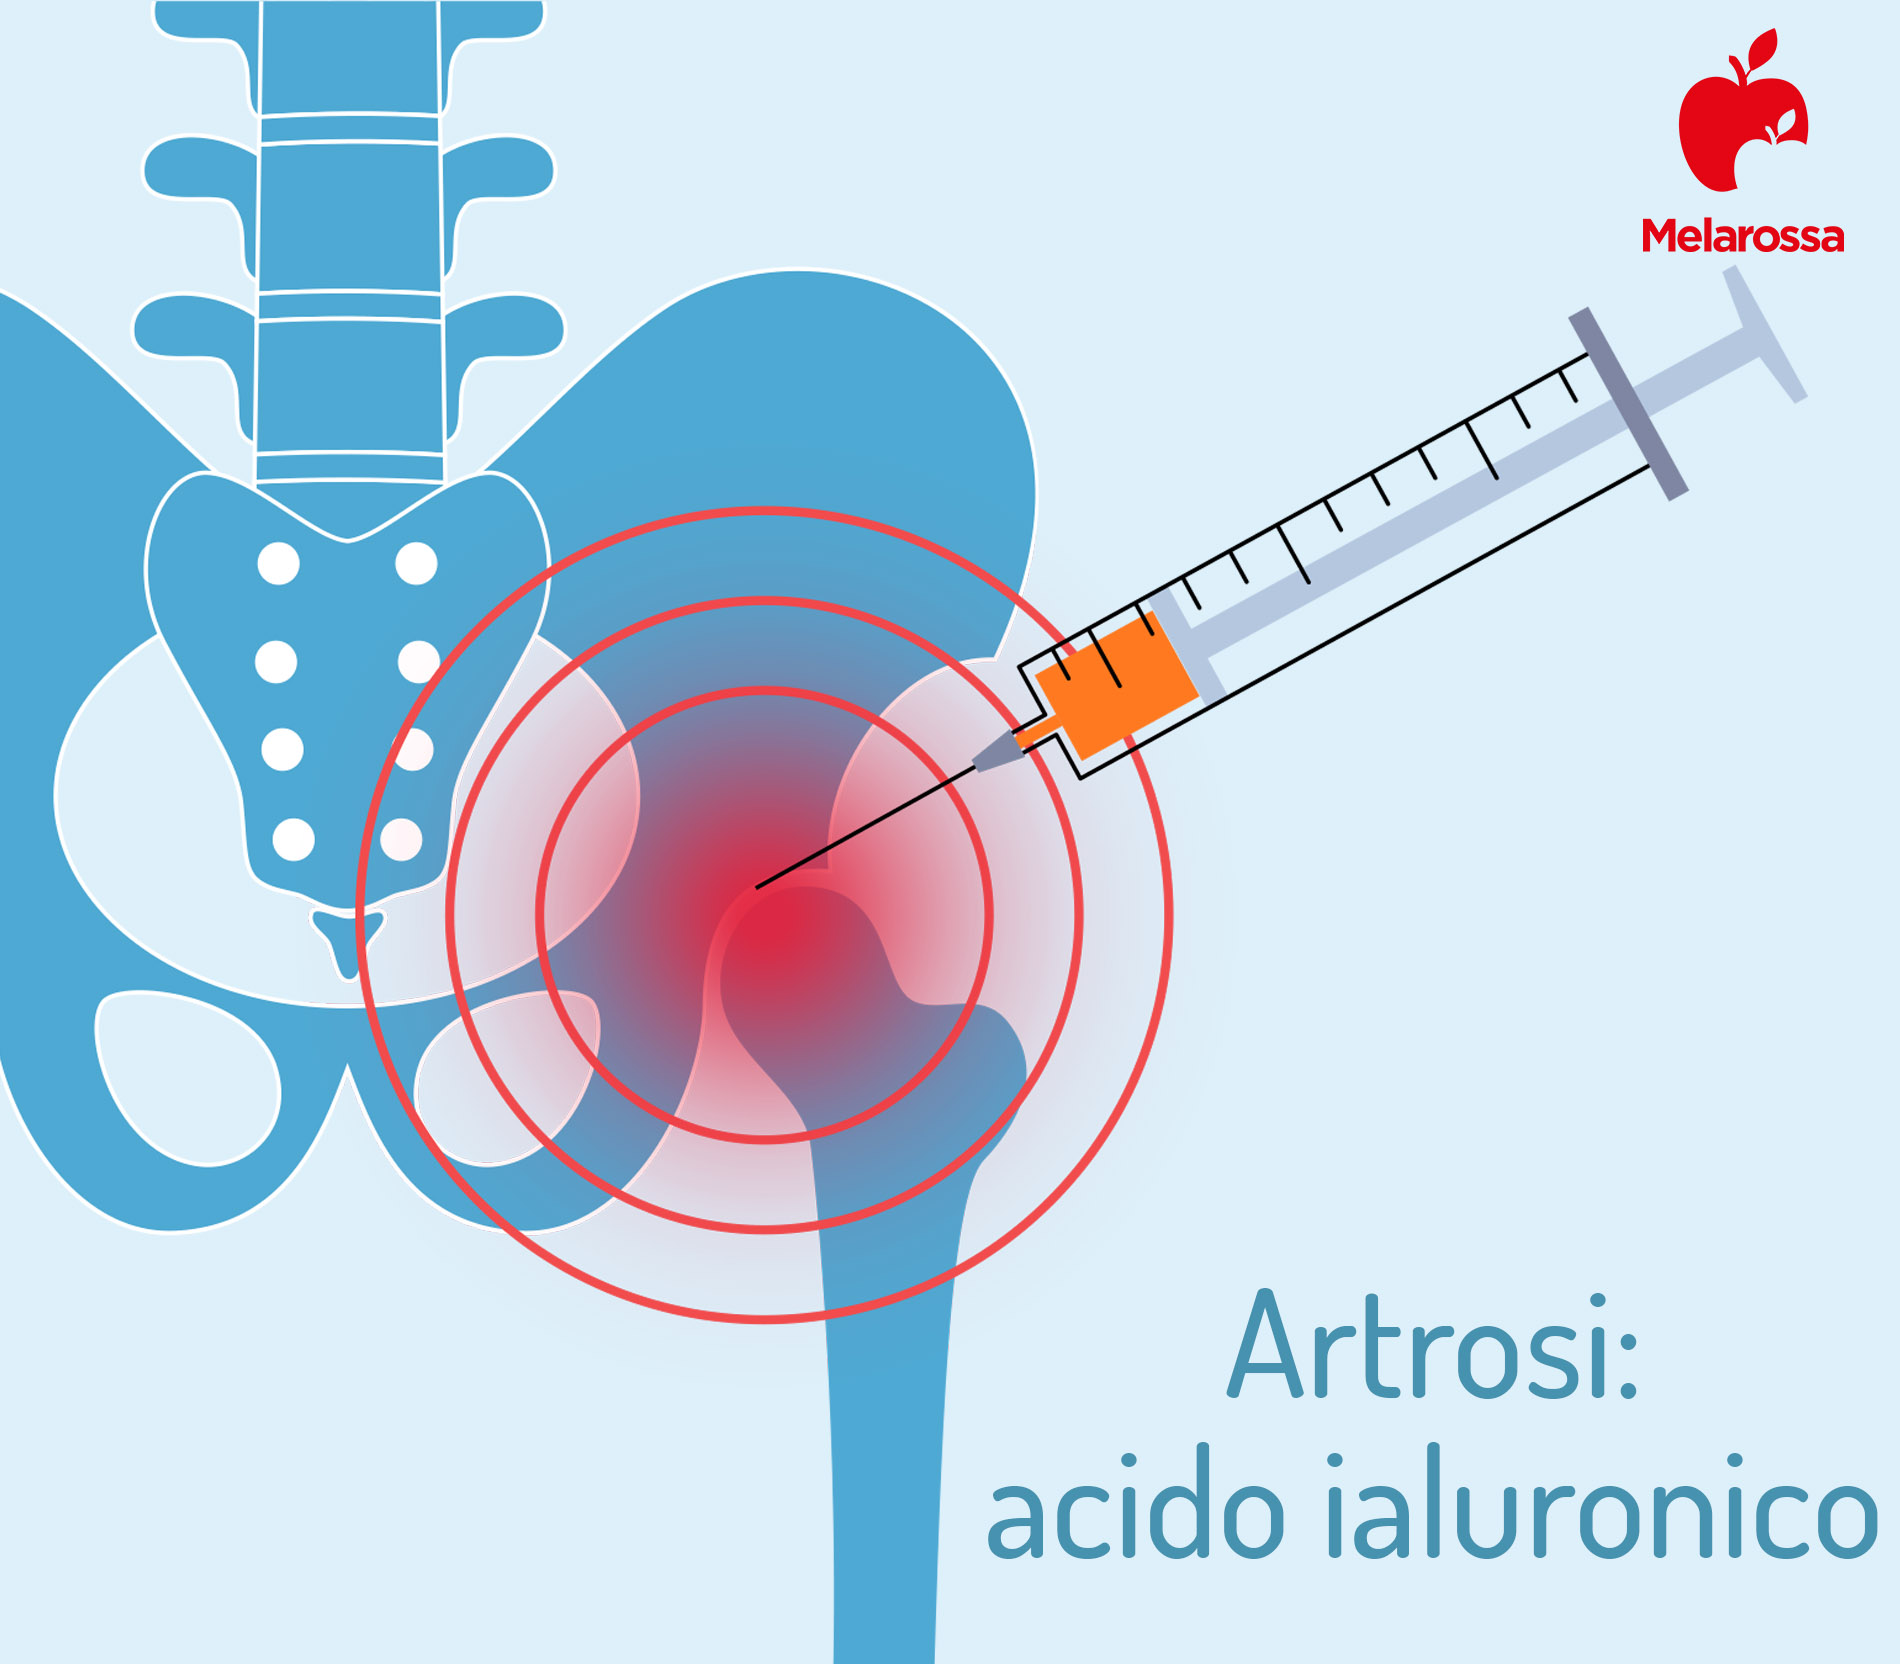 curare artrosi con acido ialuronico